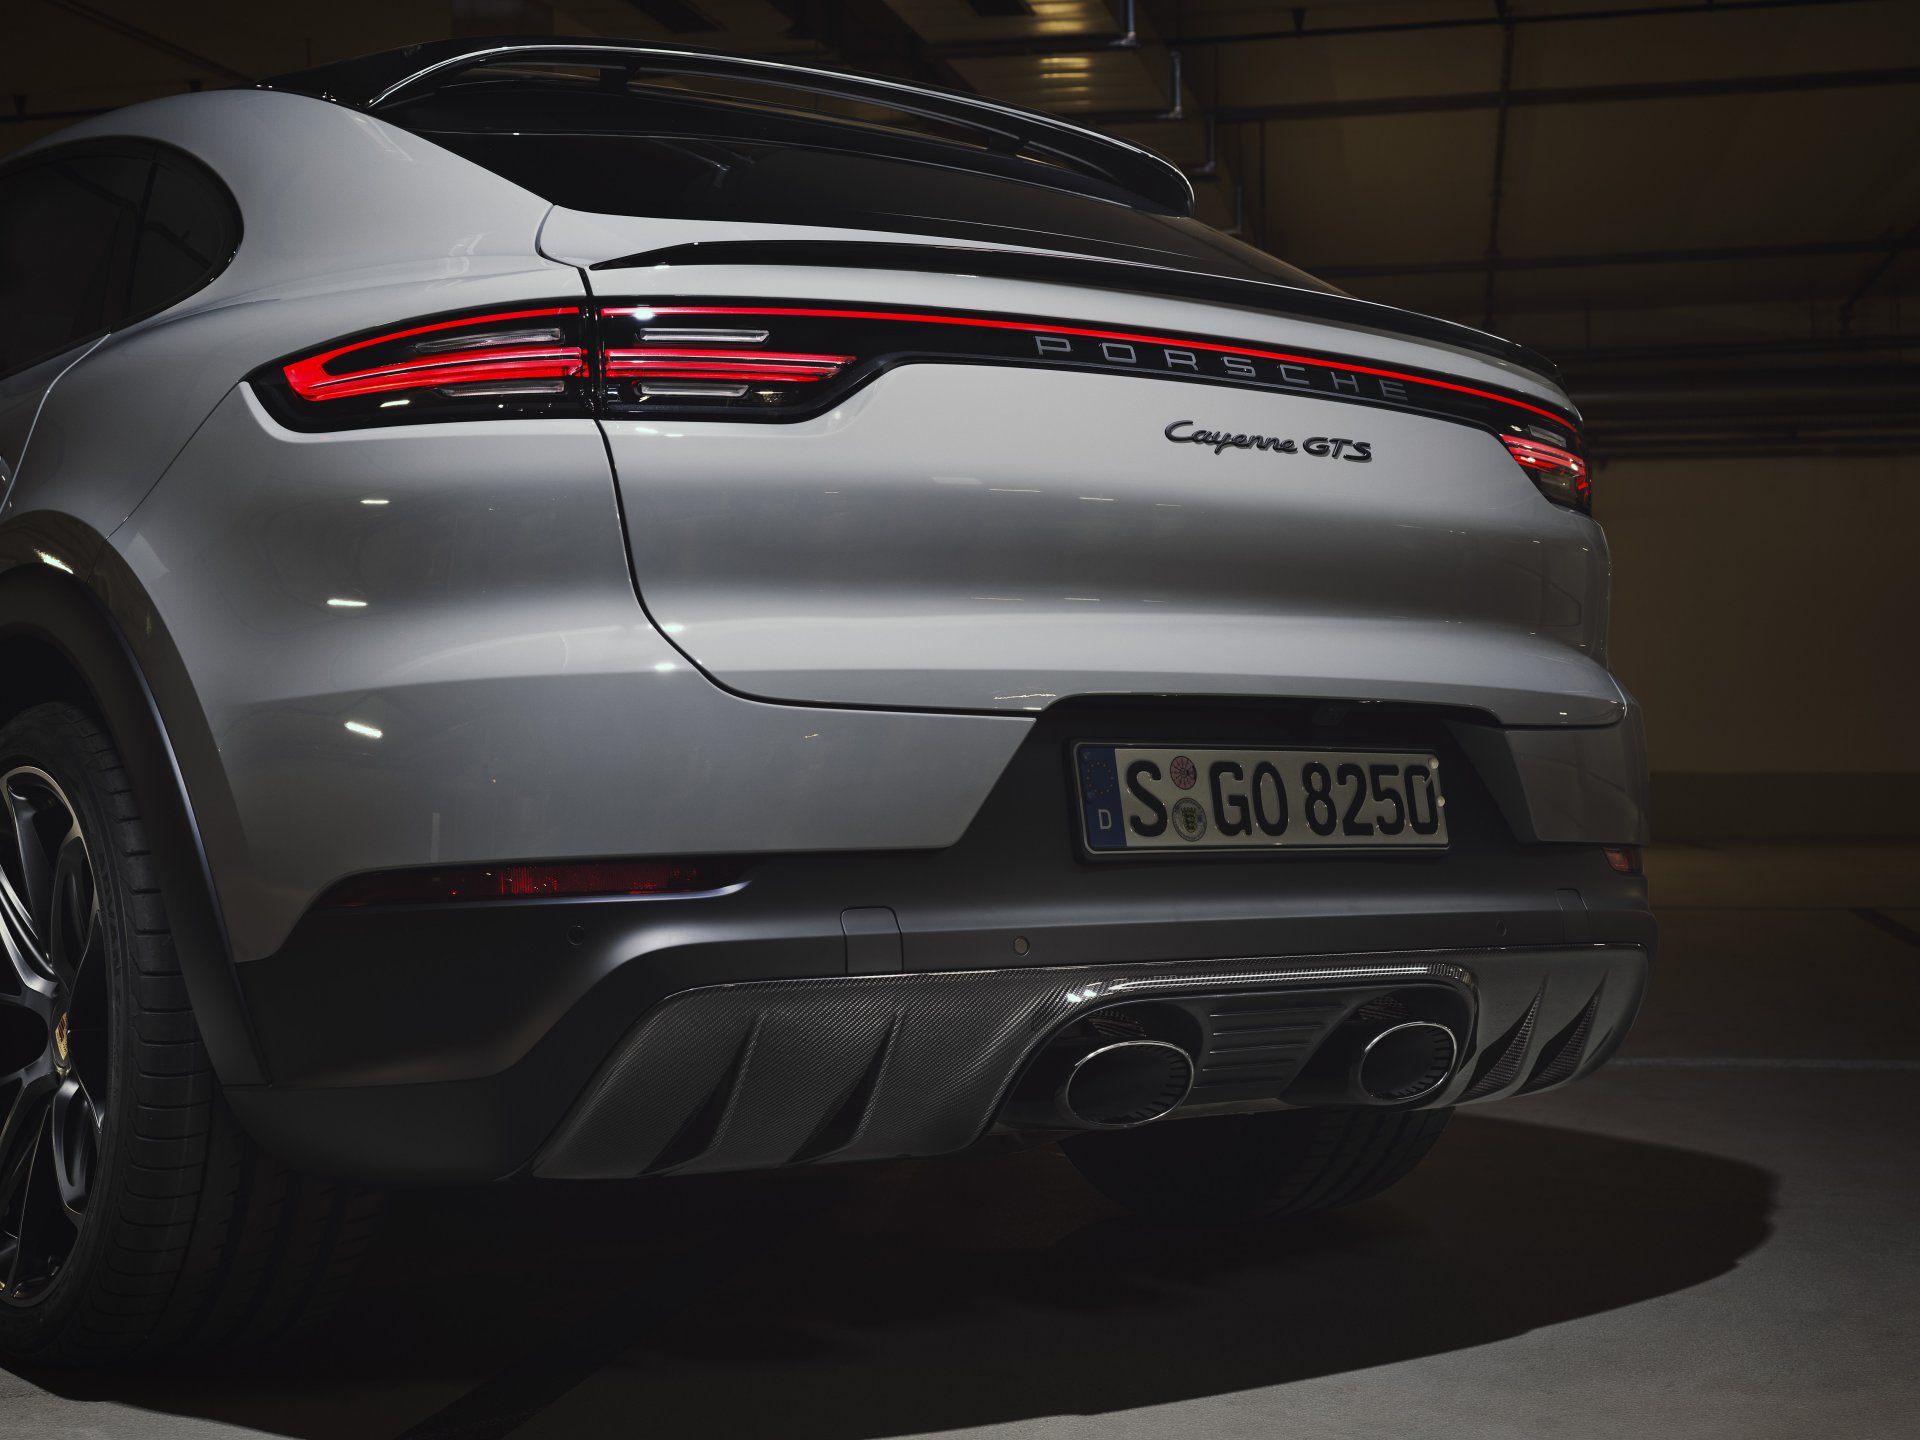 สองสุดยอดสปอร์ต SUV ยกระดับความแรง พร้อมเพิ่มเติมอุปกรณ์พิเศษ ติดตั้งขุมพลังเครื่องยนต์ V8: ปอร์เช่ คาเยนน์ จีทีเอส ใหม่ (The new Porsche Cayenne GTS)